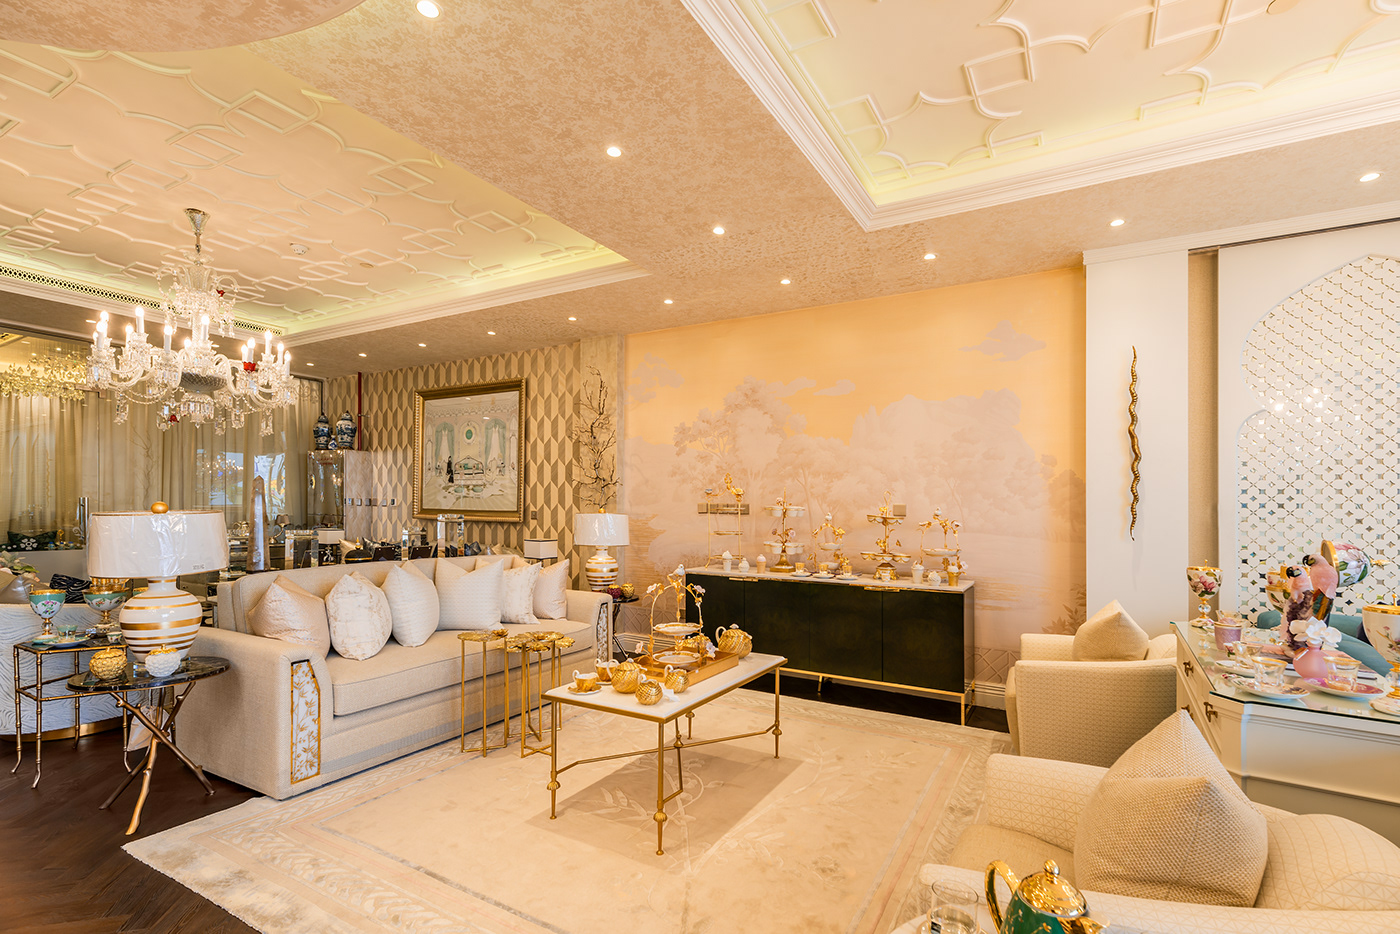 Architecture Photography decor decoration dubai home Interior interior design  interiordesign InteriorPhotography UAE